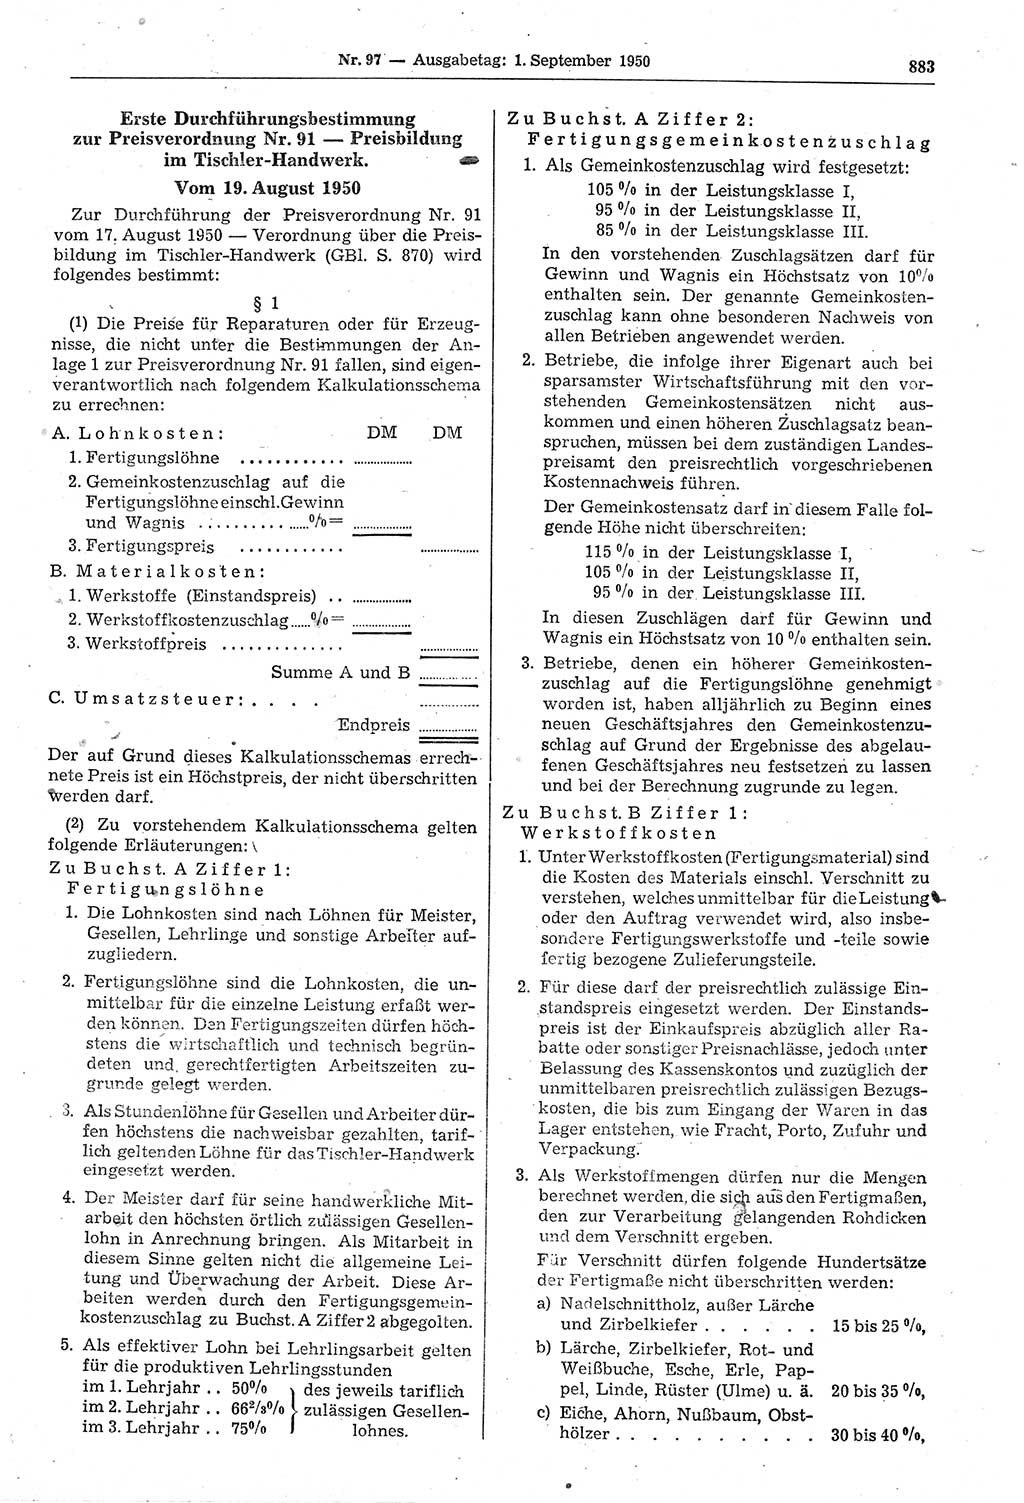 Gesetzblatt (GBl.) der Deutschen Demokratischen Republik (DDR) 1950, Seite 883 (GBl. DDR 1950, S. 883)